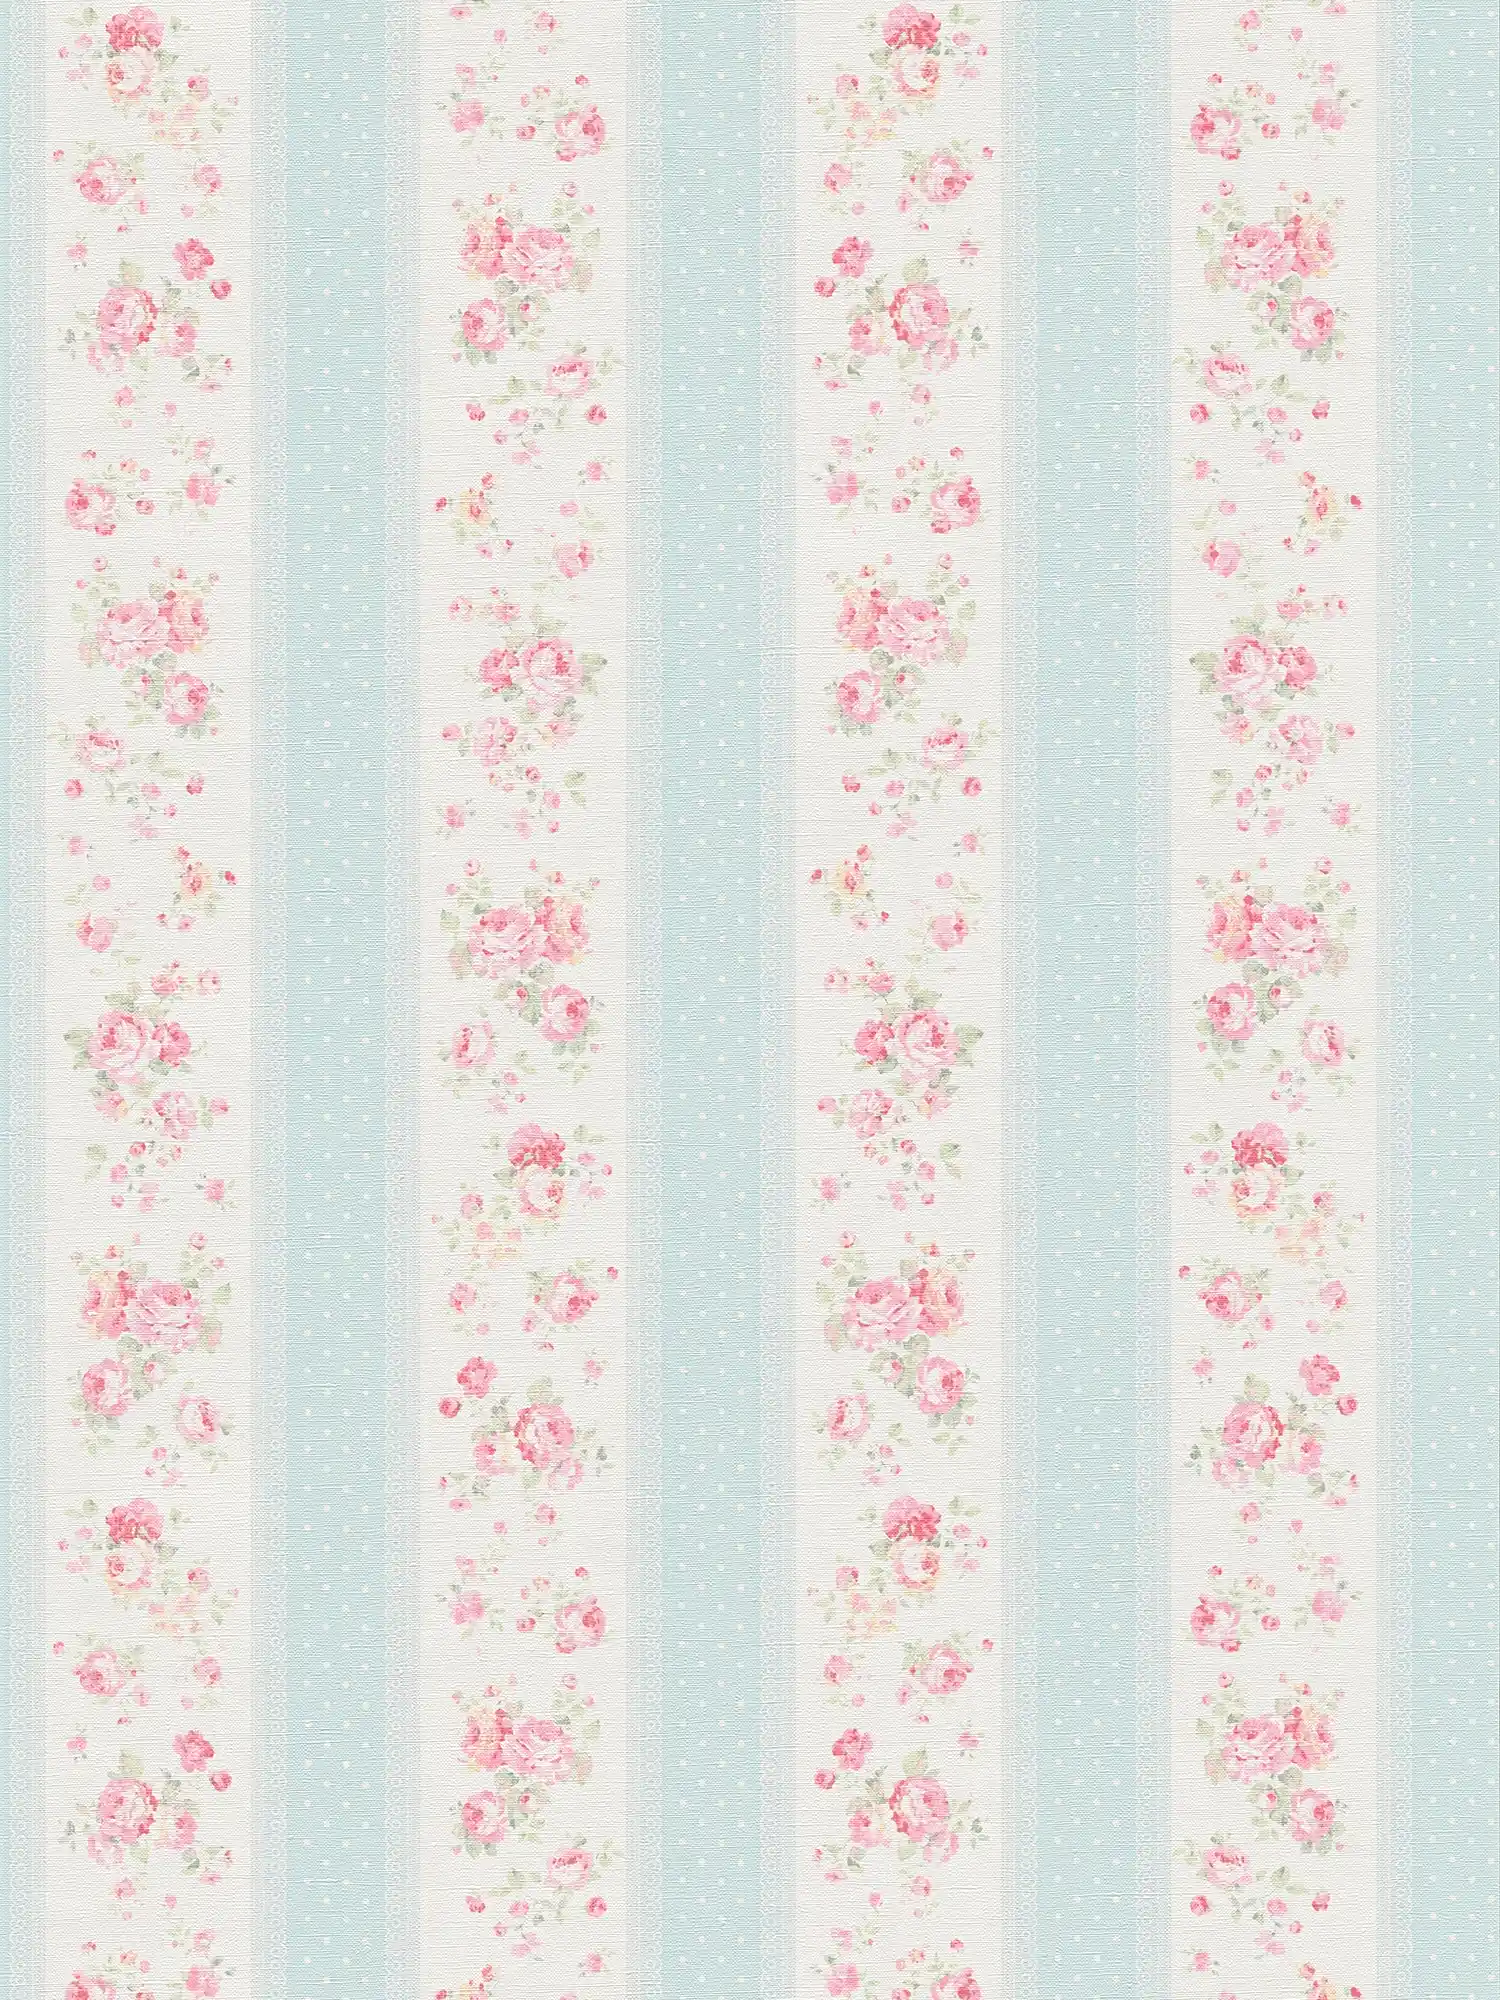 Vliesbehang met strepen, bloemen en stippen - blauw, wit, roze
